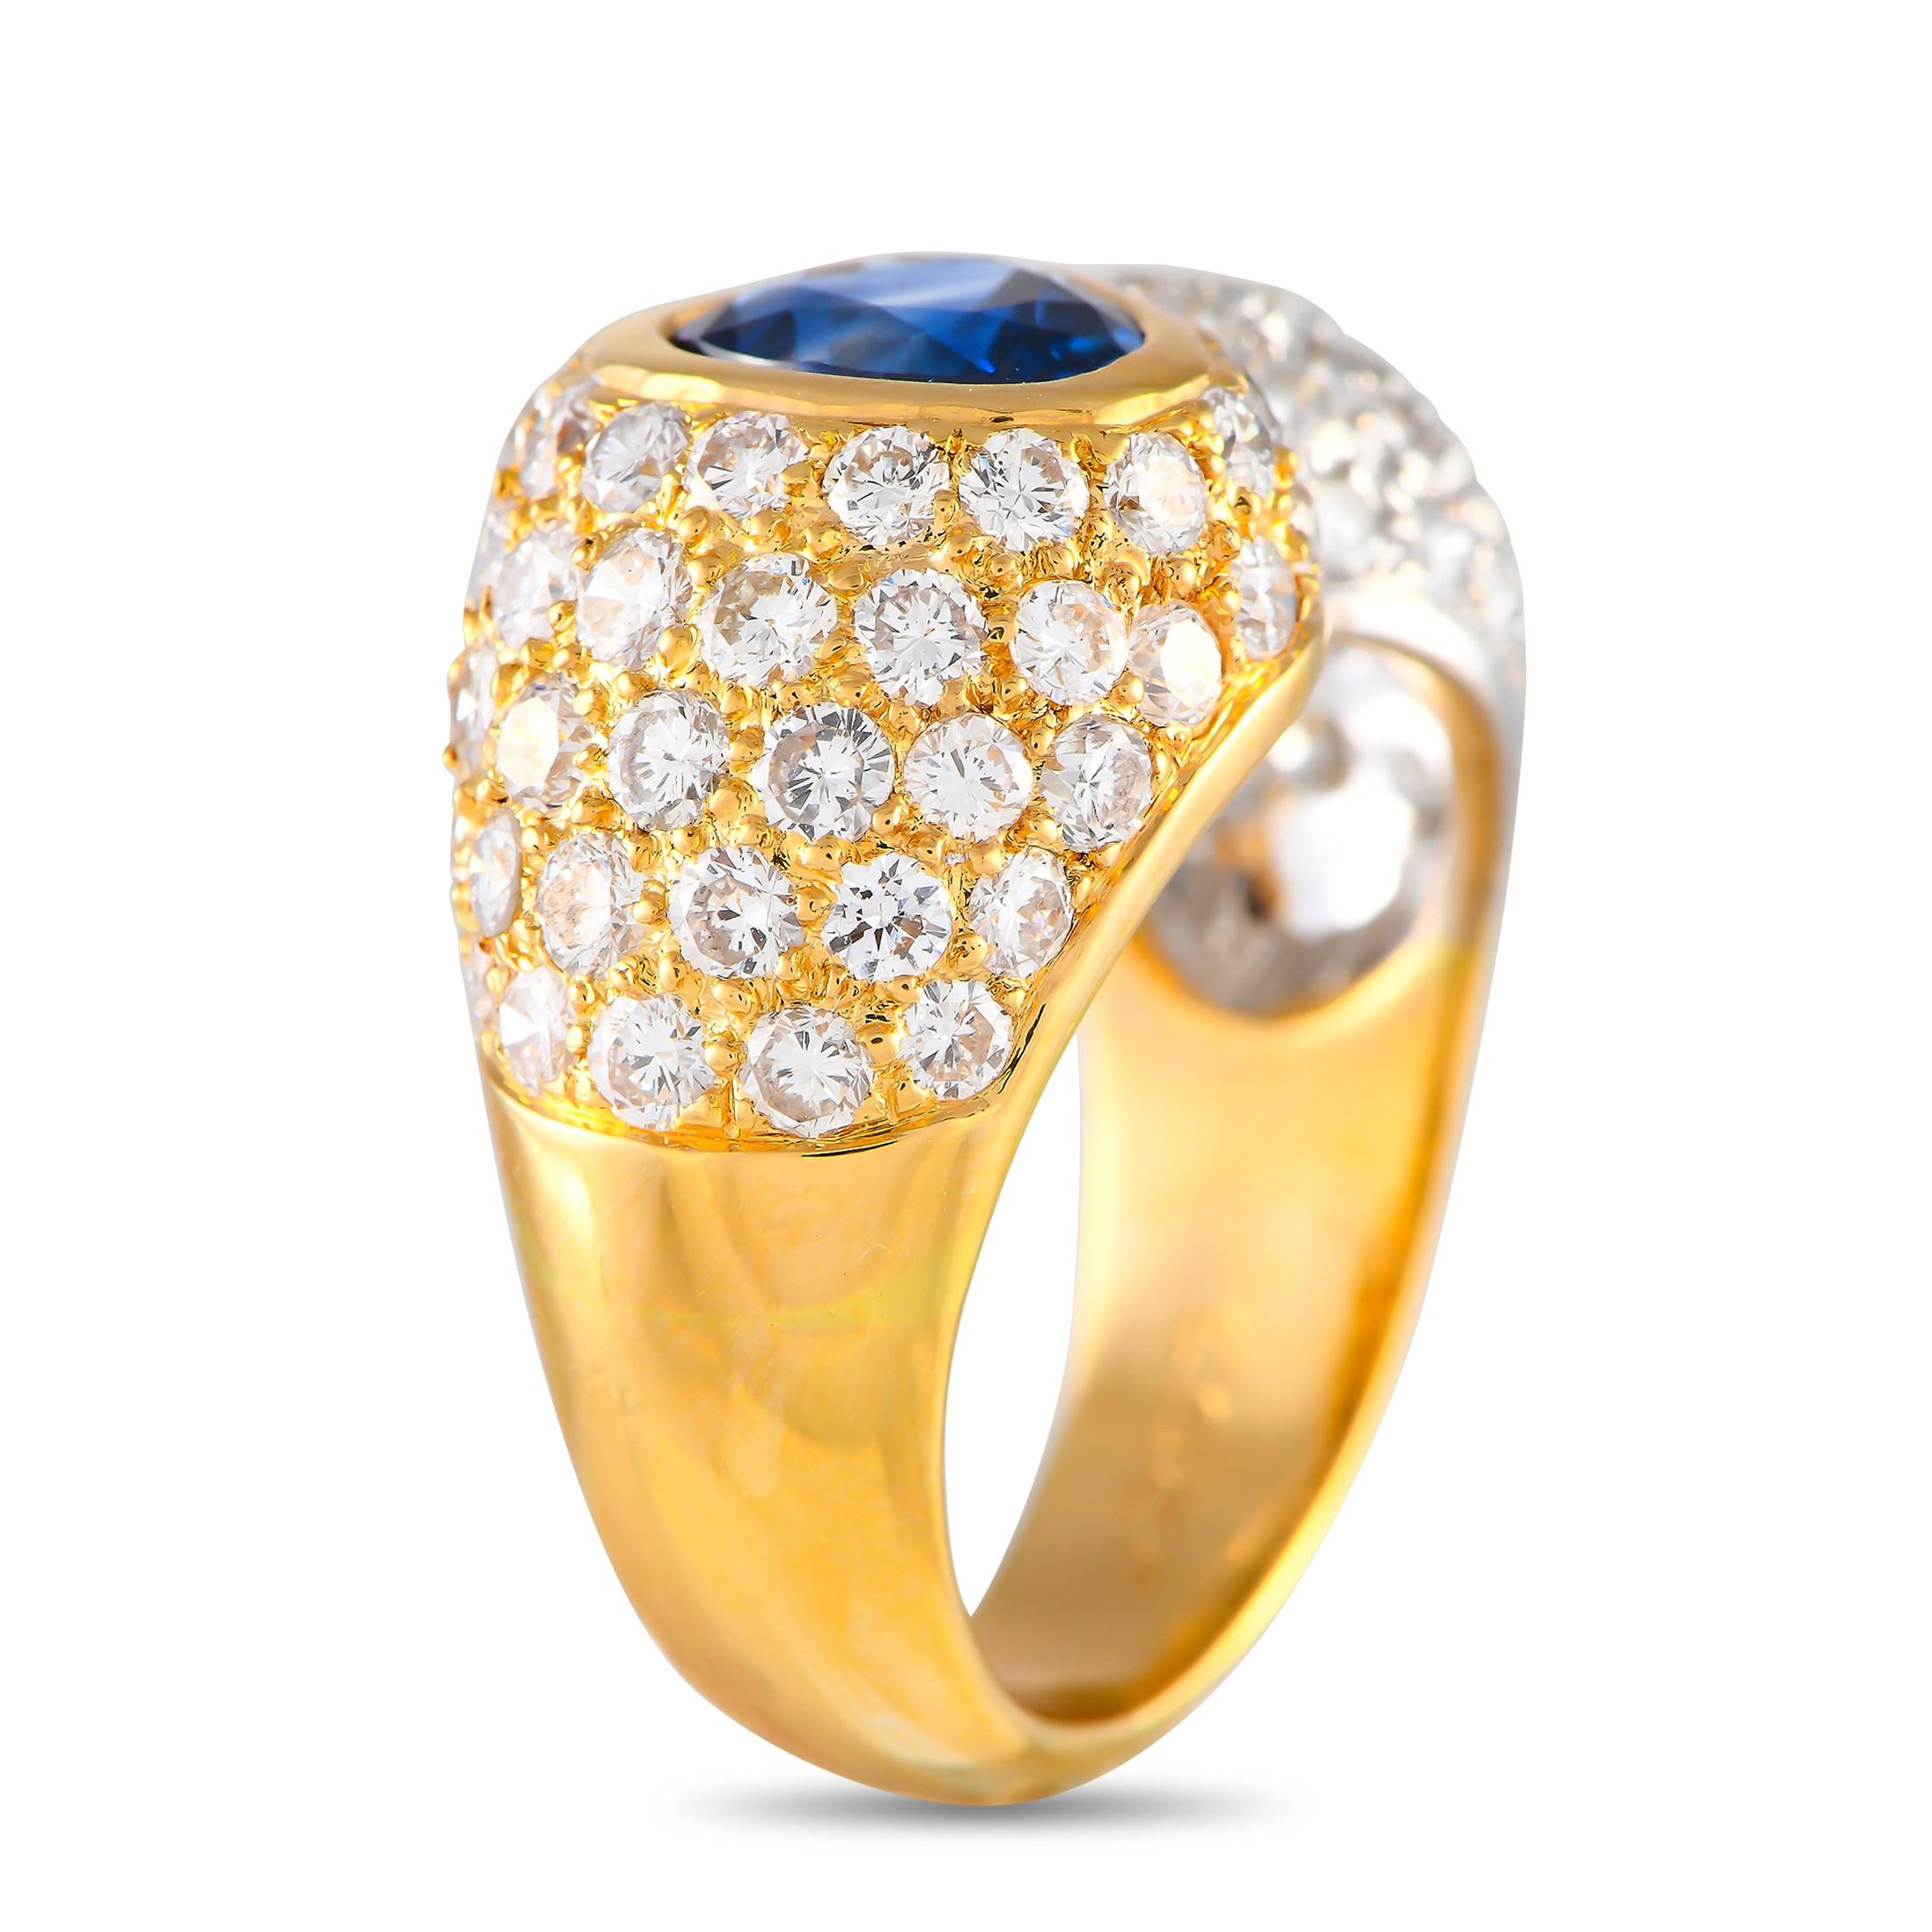 Dieser opulente Ring aus 18 Karat Gelbgold ist schlichtweg atemberaubend. Eingelassene Diamanten mit einem Gesamtgewicht von 2,53 Karat fangen mühelos das Licht ein  aber der 1,73 Karat schwere GIA-zertifizierte beheizte Saphir in der Mitte macht